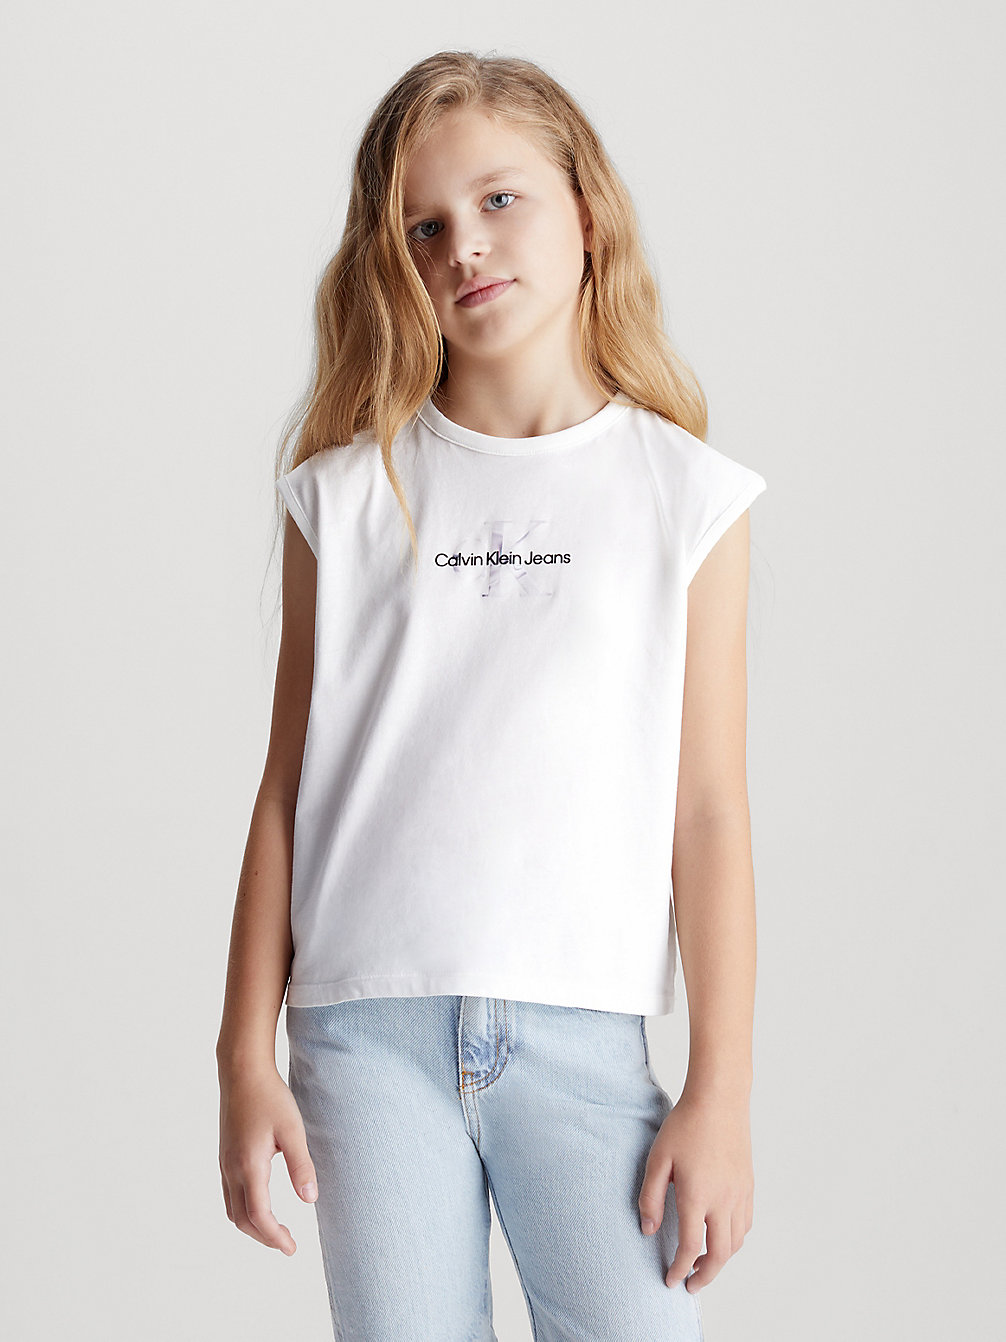 BRIGHT WHITE Tanktop Mit Metallic-Logo Für Kinder undefined Kids Unisex Calvin Klein